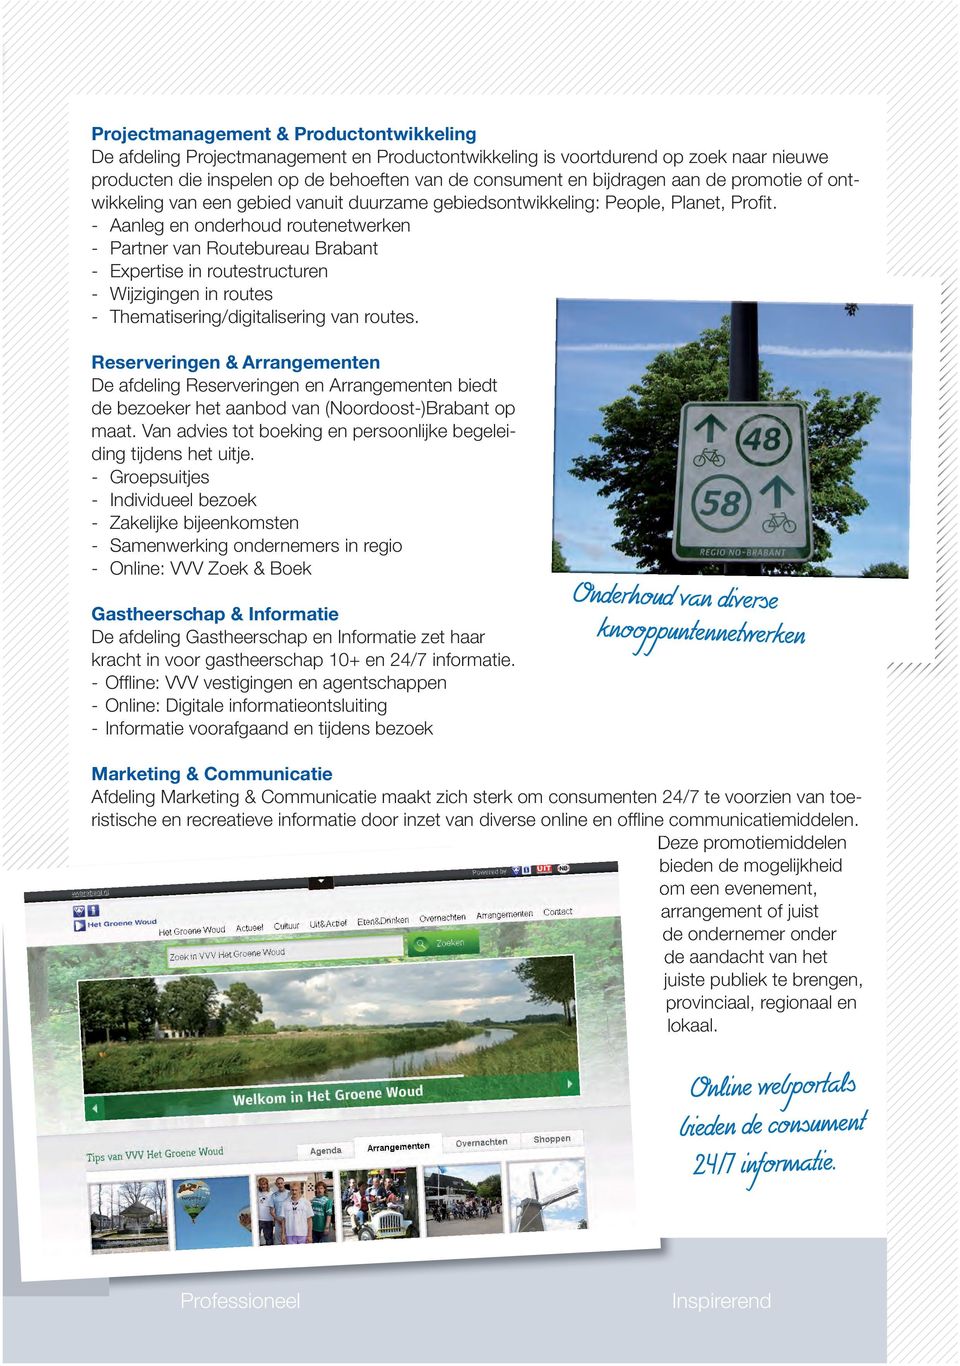 - Aanleg onderhoud routetwerk - Partner Routebureau Brabant - Expertise in routestructur - Wijziging in routes - Thematisering/digitalisering routes.